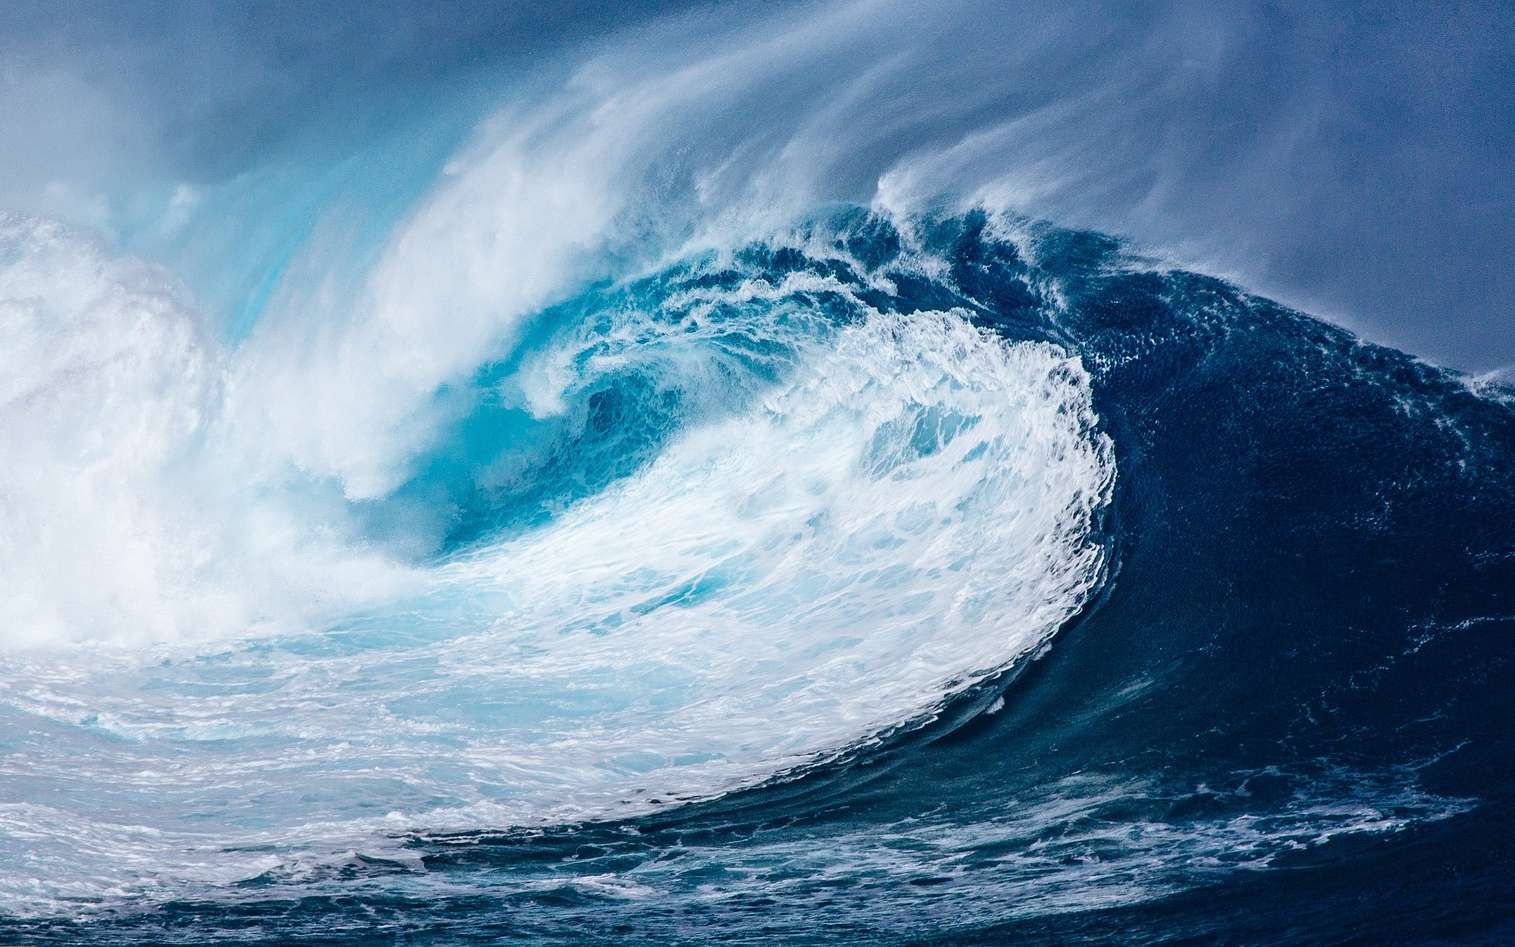 Les ouragans génèrent des vagues de plus en plus grandes, surtout dans l'Atlantique nord !